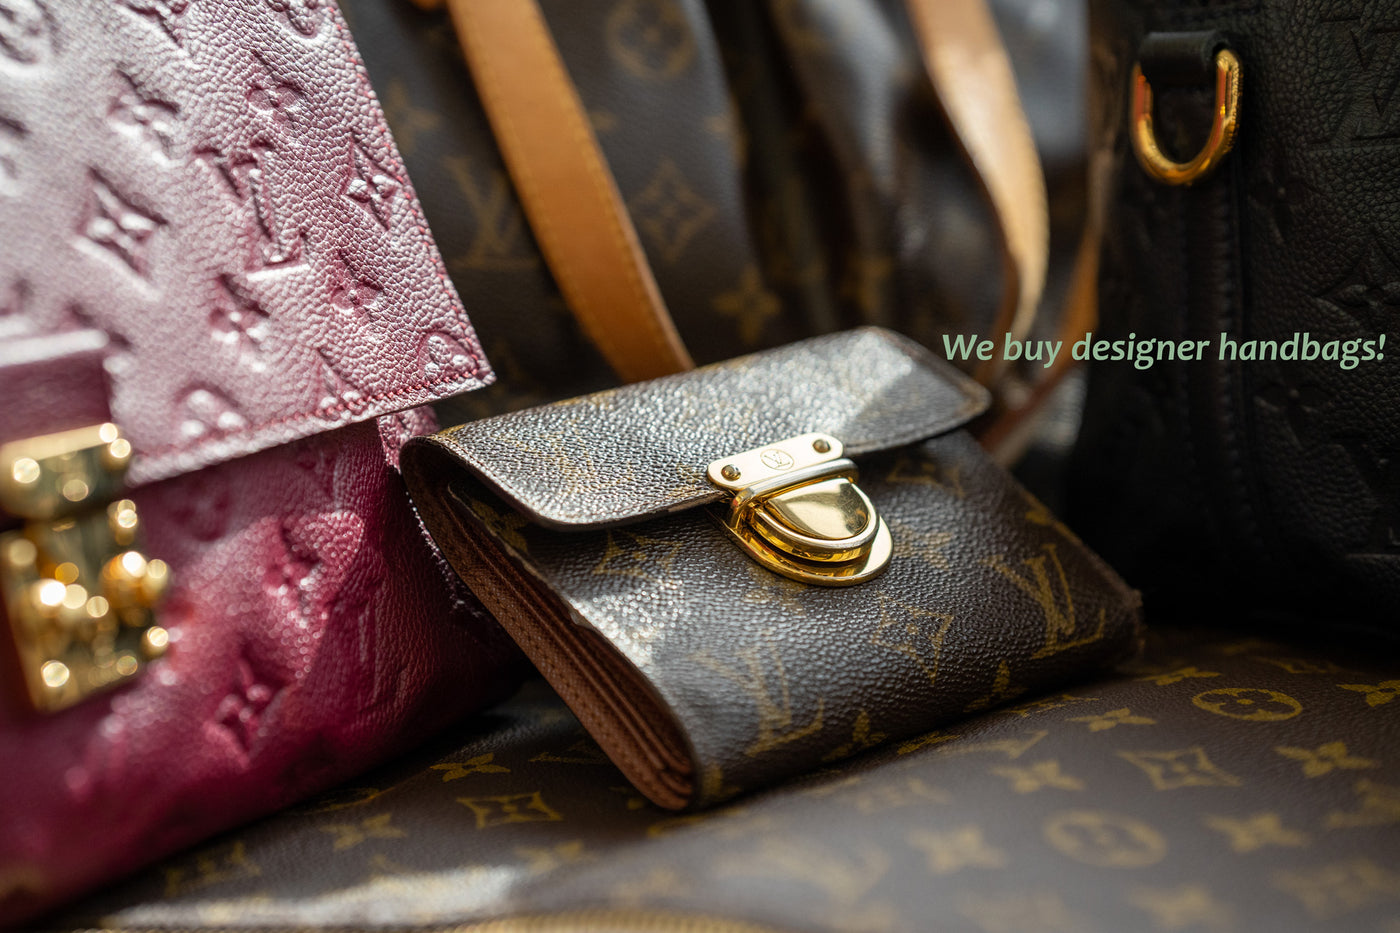 Pre-Owned Luxury Handbags